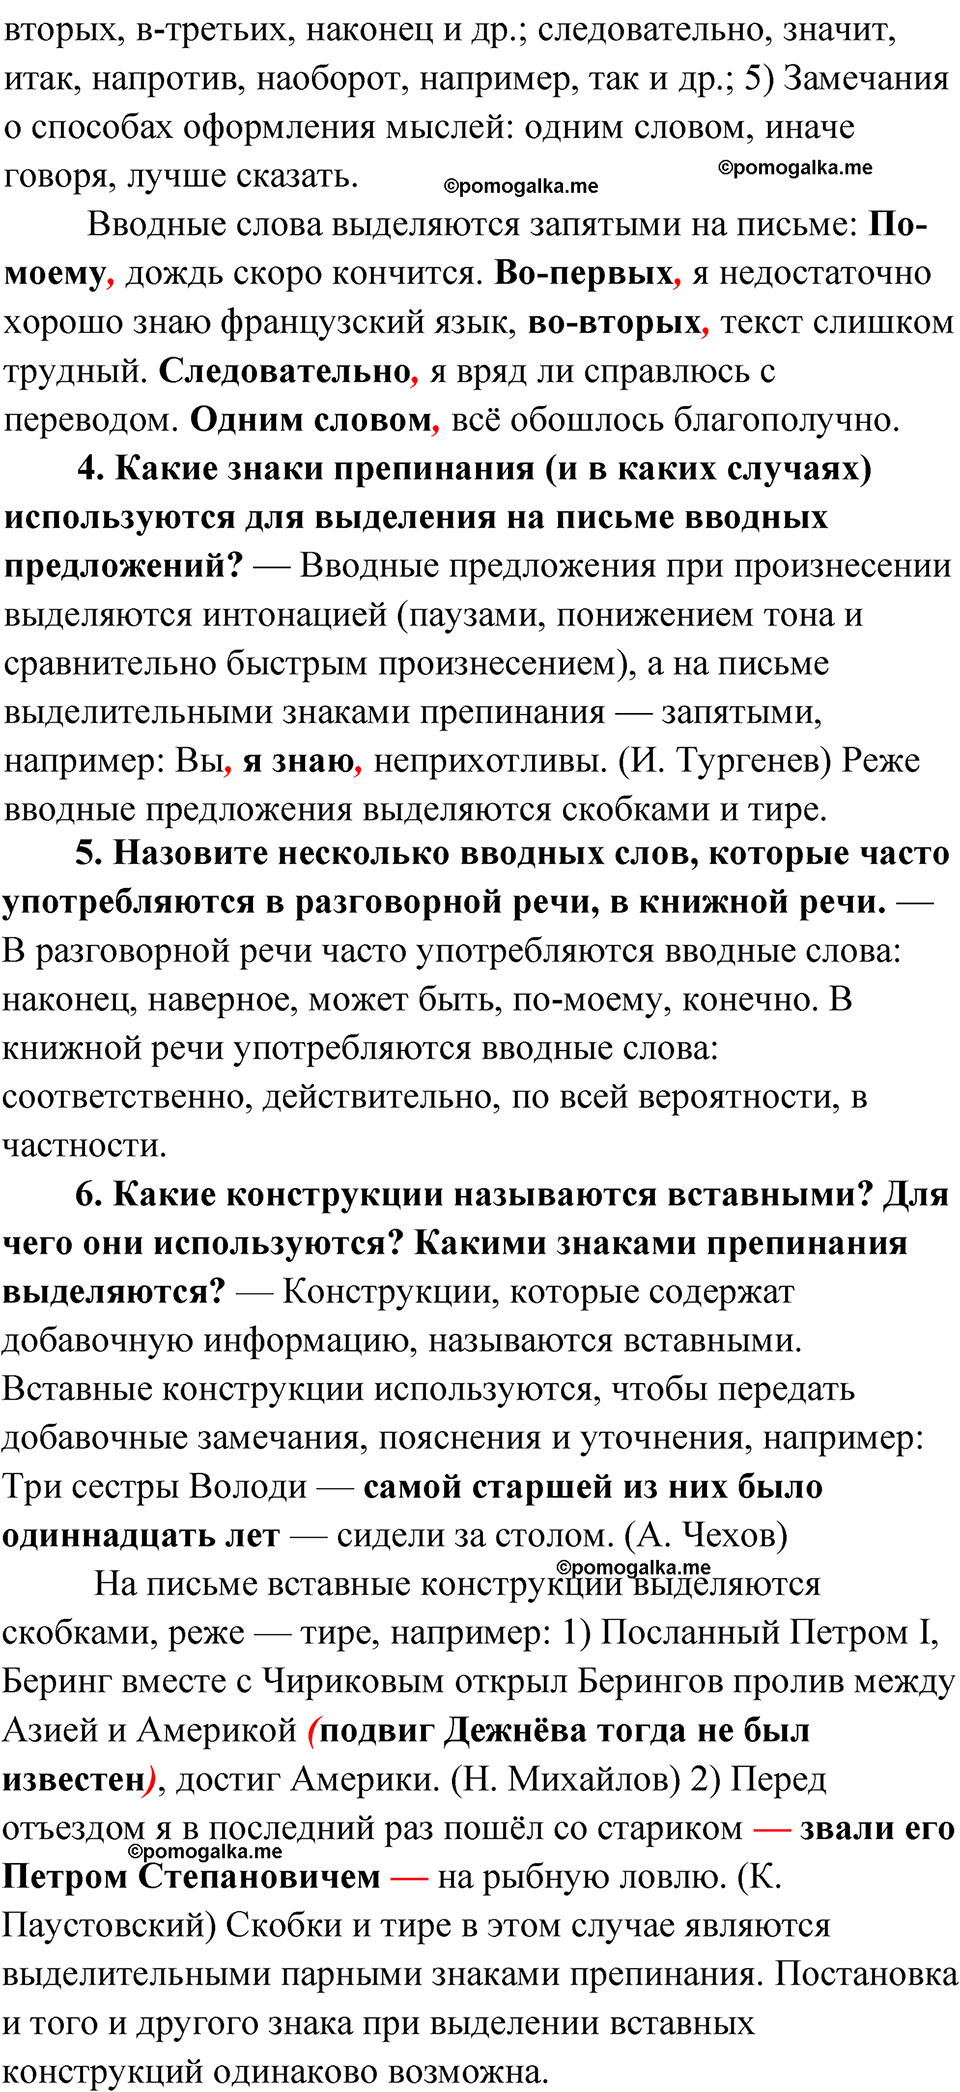 вопросы и задания для повторения, страница 254 русский язык 8 класс Бархударов 2023 год